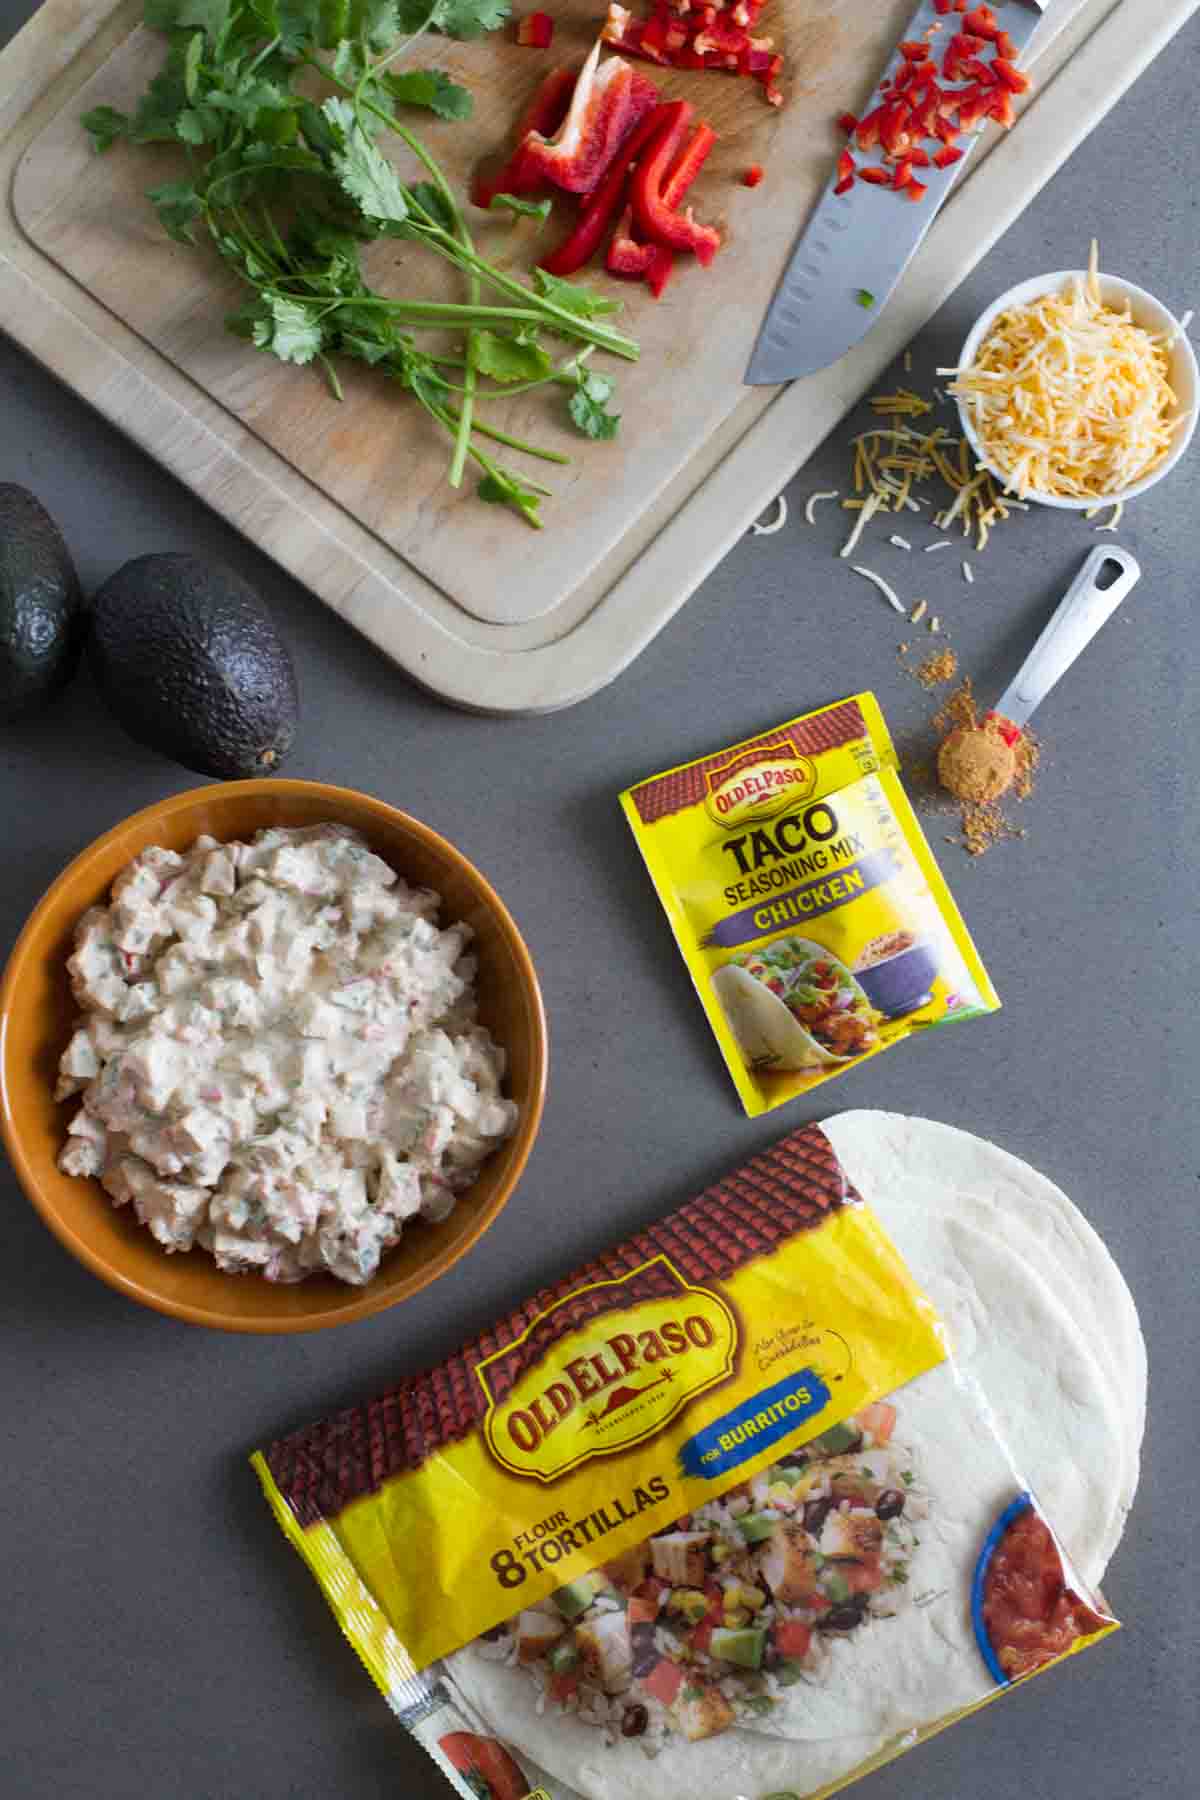 Ingredients to make Tex-Mex Chicken Salad Wraps.